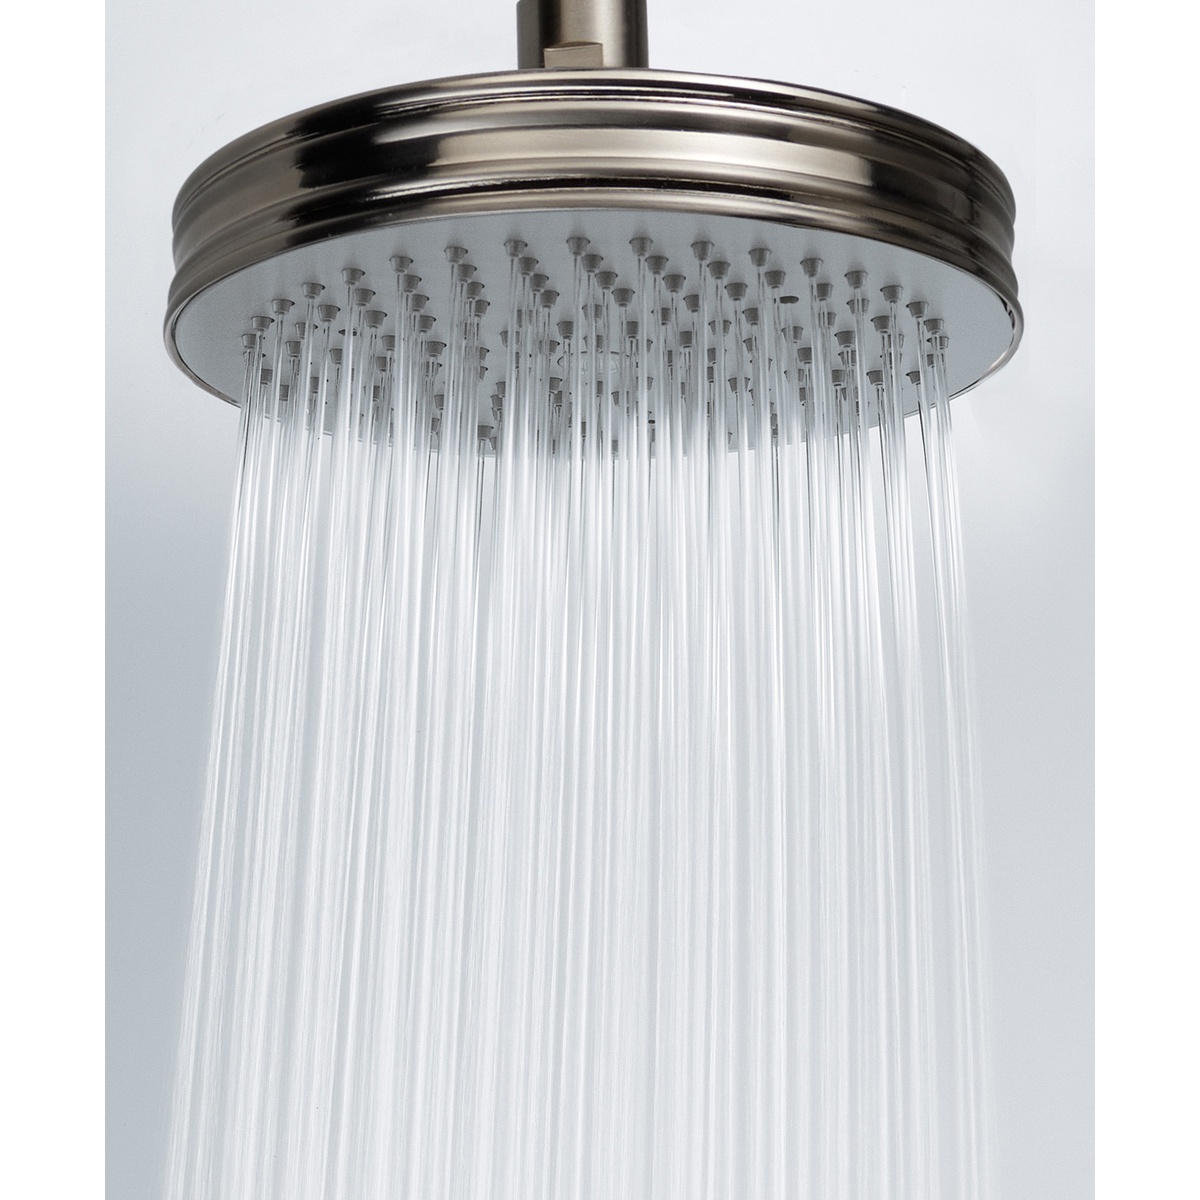 Bossini Soffione doccia design moderno con getto pioggia e luci LED